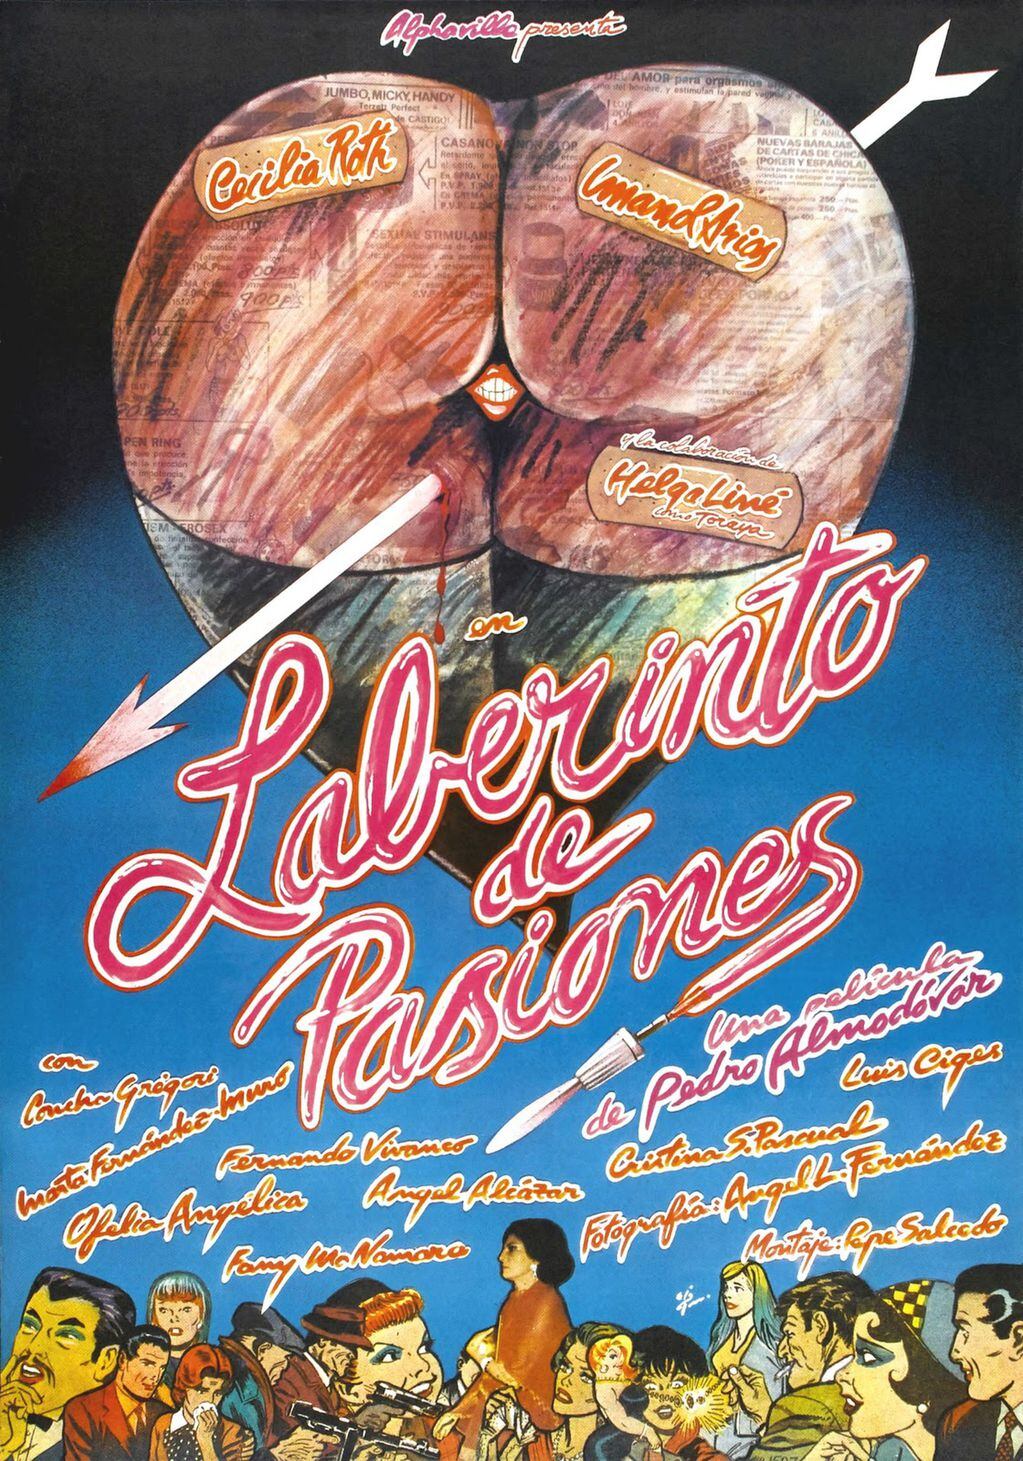 Póster original de "Laberinto de pasiones", la segunda película de Almodóvar.